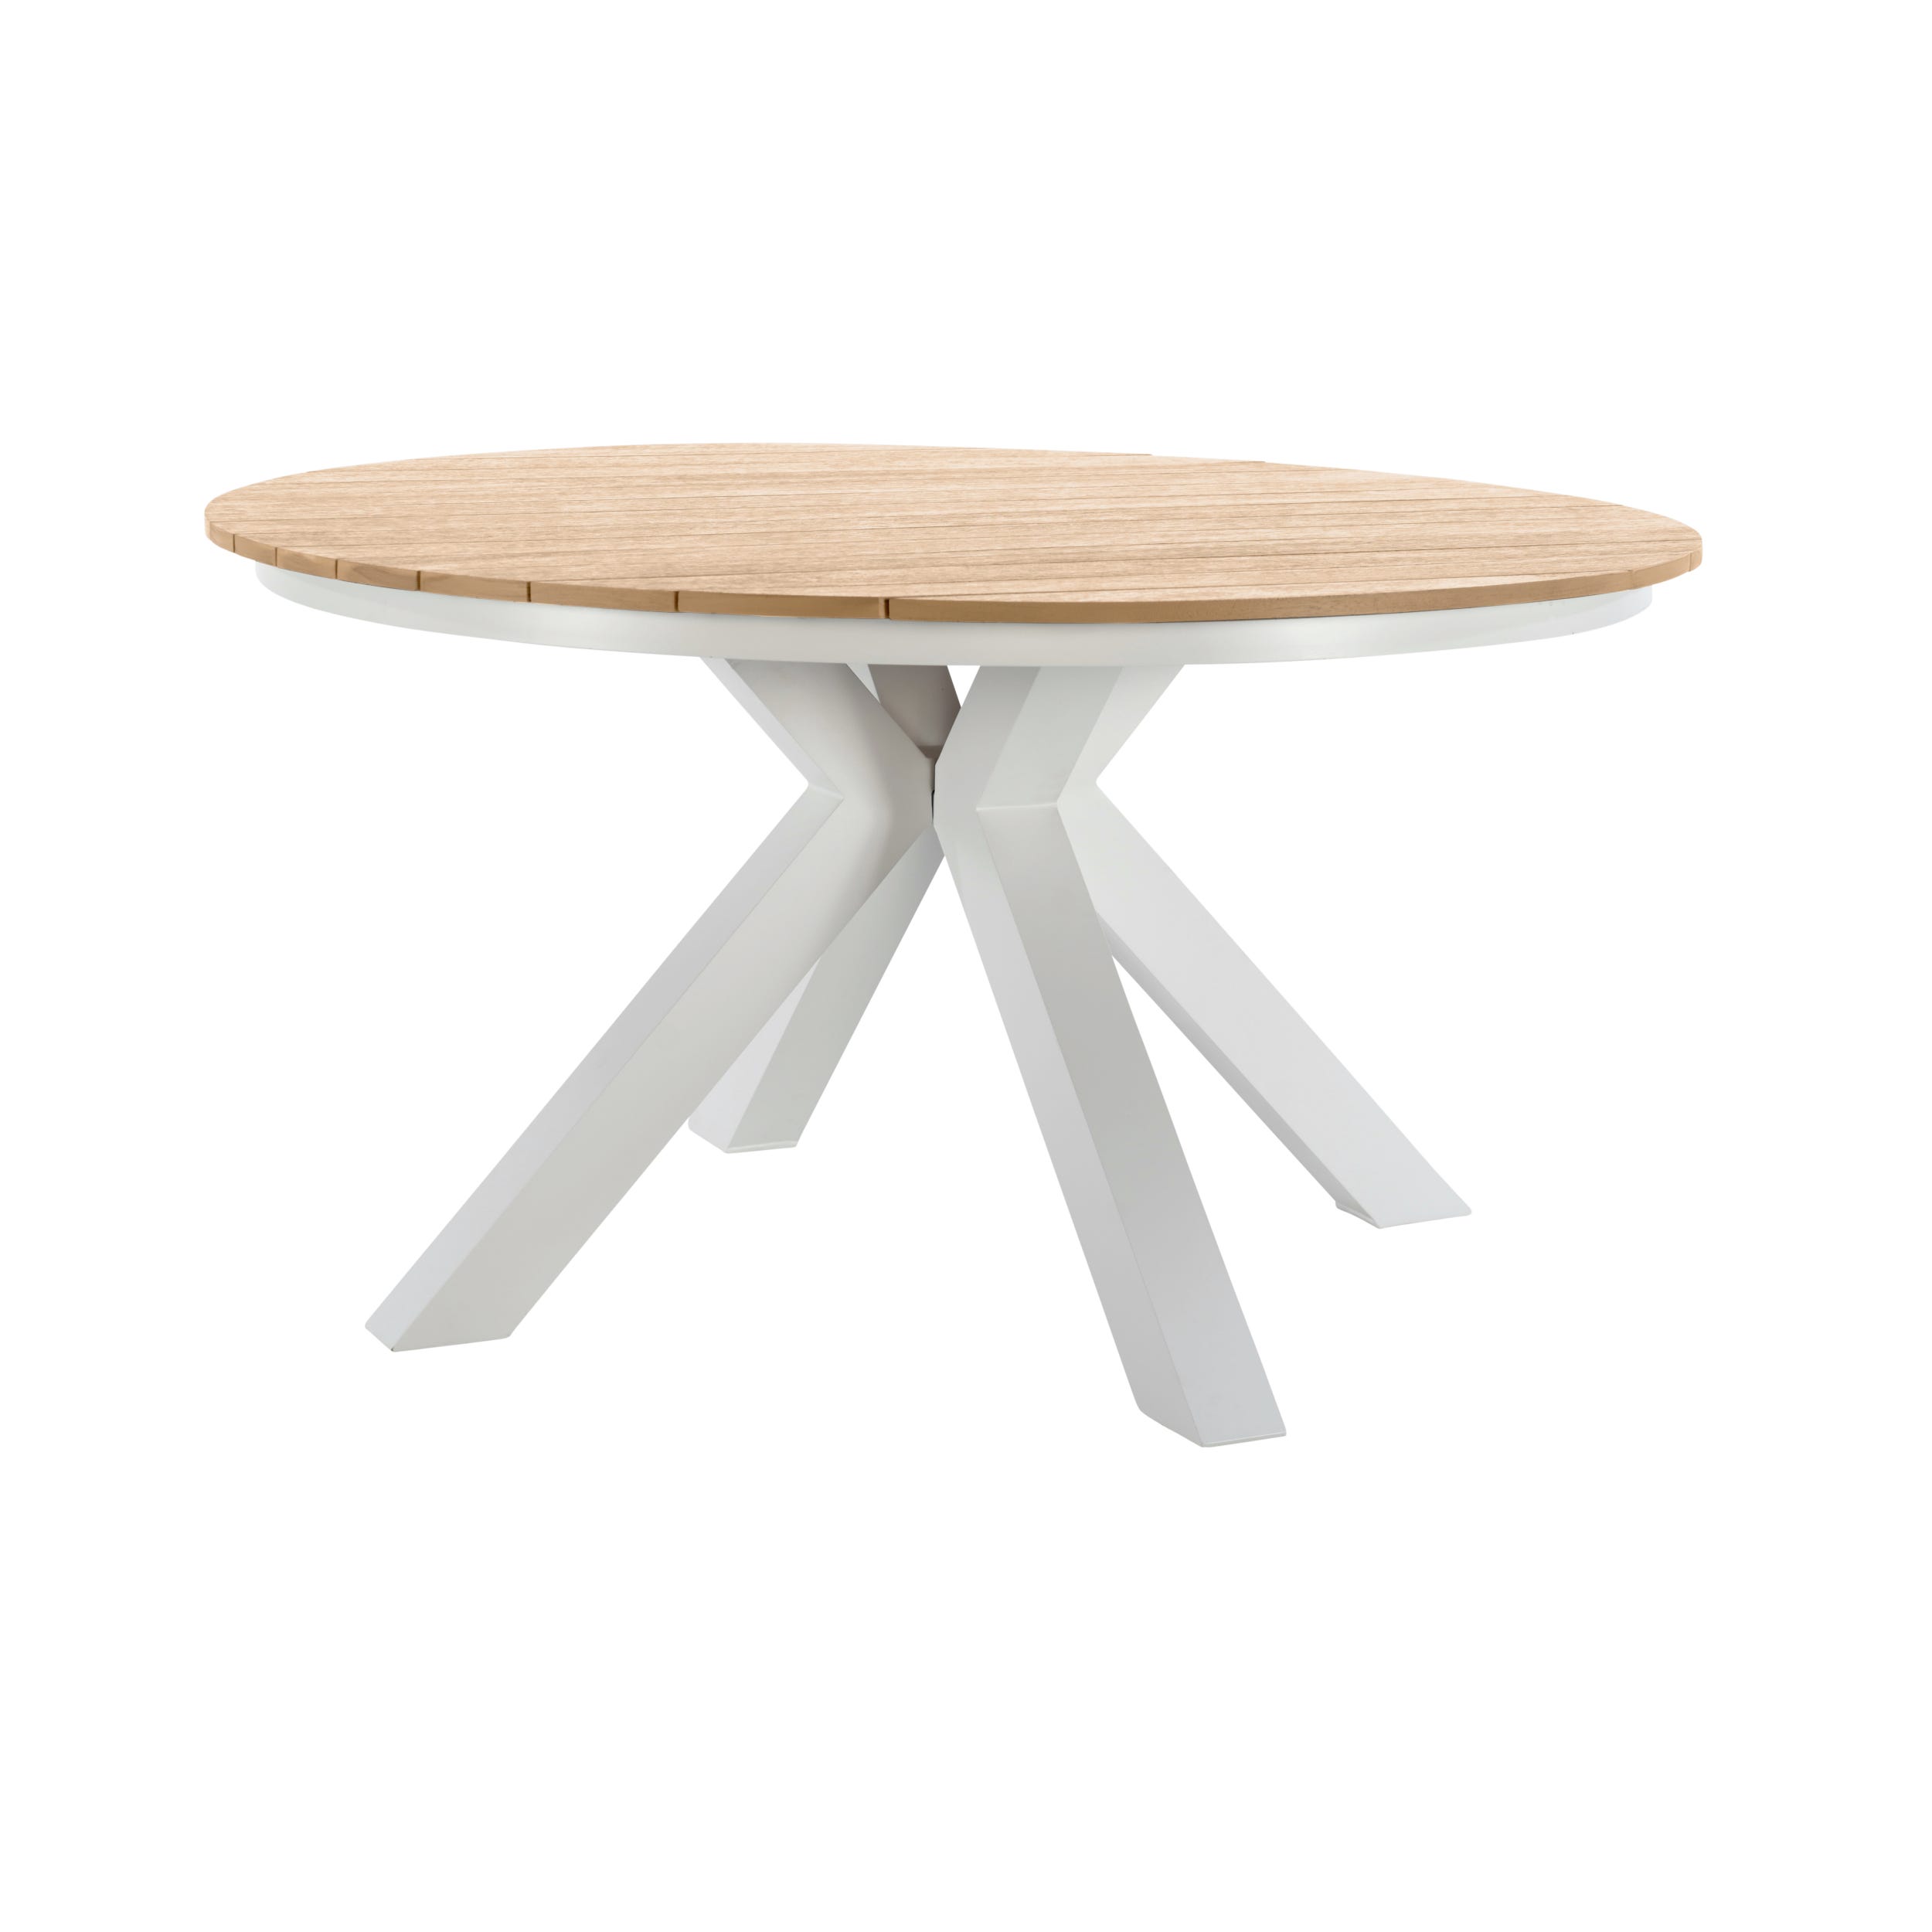 Gales mesa de comedor redonda de madera color blanco y natural